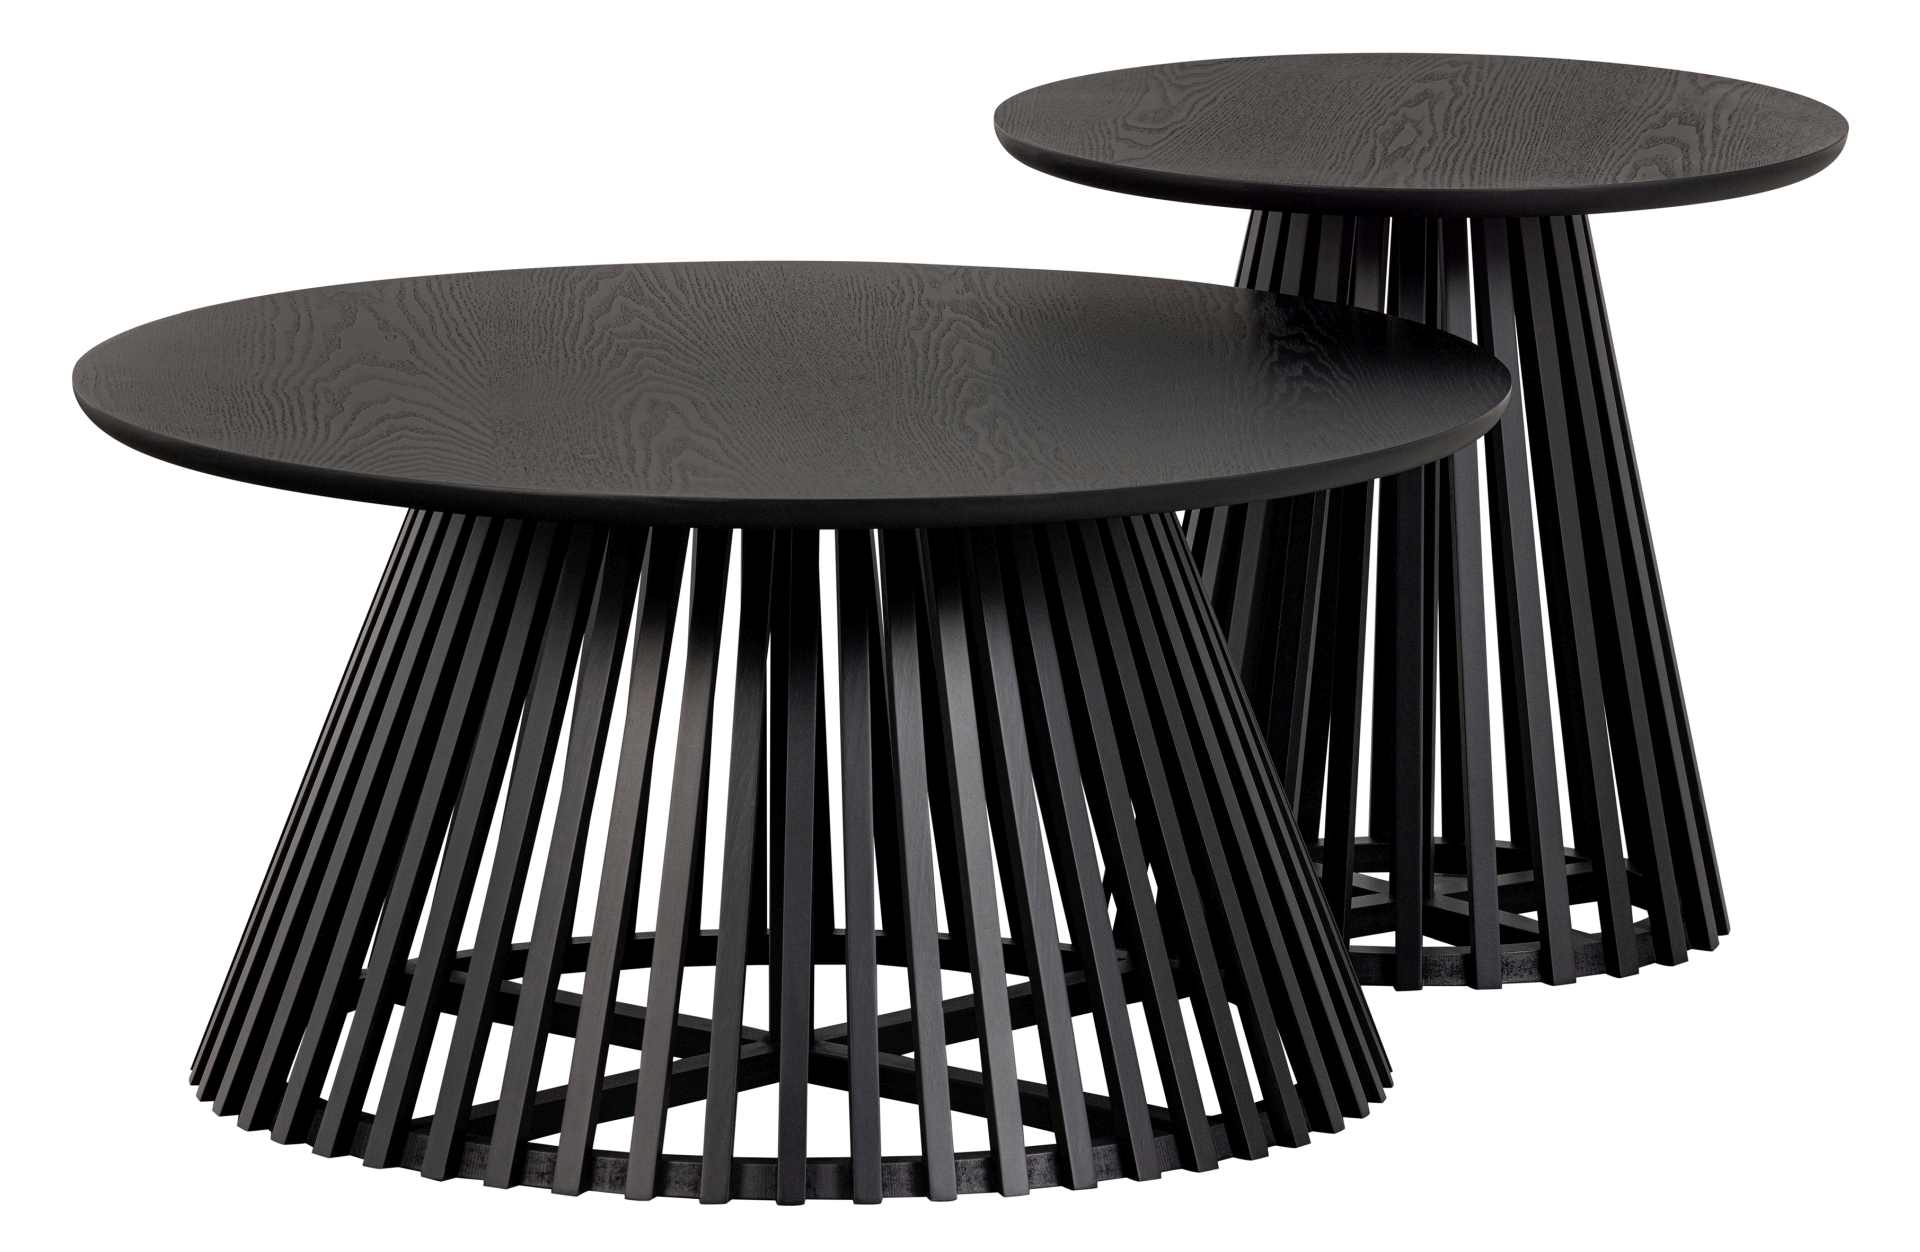 Der Beistelltisch Slats High überzeugt mit seinem modernen aber auch schlichtem Design. Gefertigt wurde der Tisch aus Kiefernholz, welches einen schwarzen Farbton besitzt.